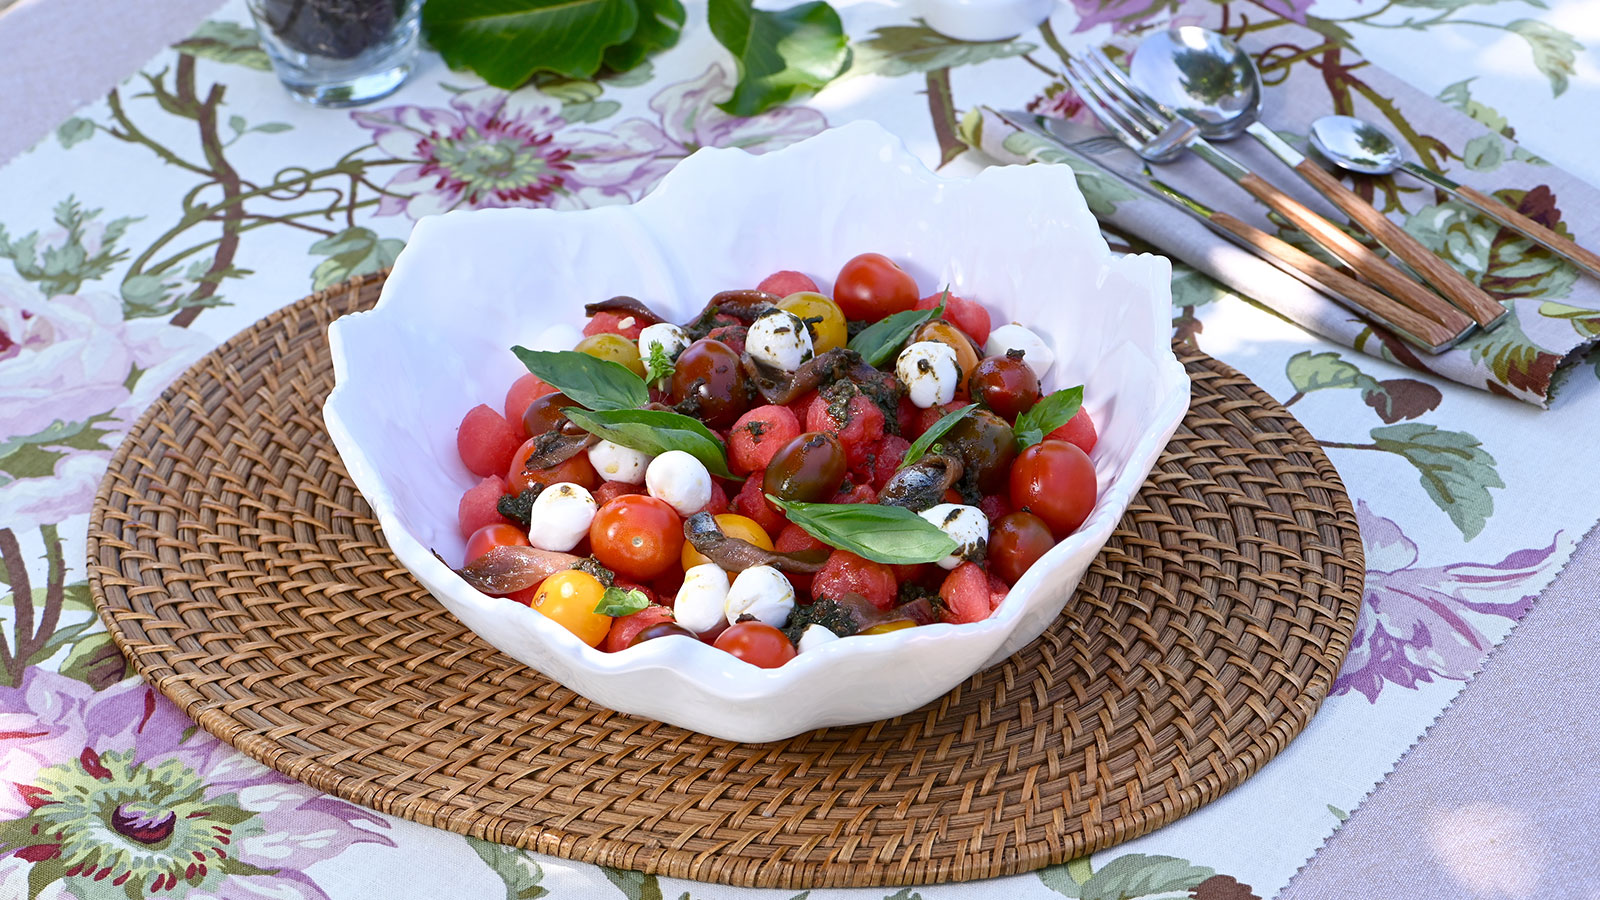 Ensalada de sandía con esferas de cherry, anchoas y mozzarella - Elena  Aymerich - Receta - Canal Cocina